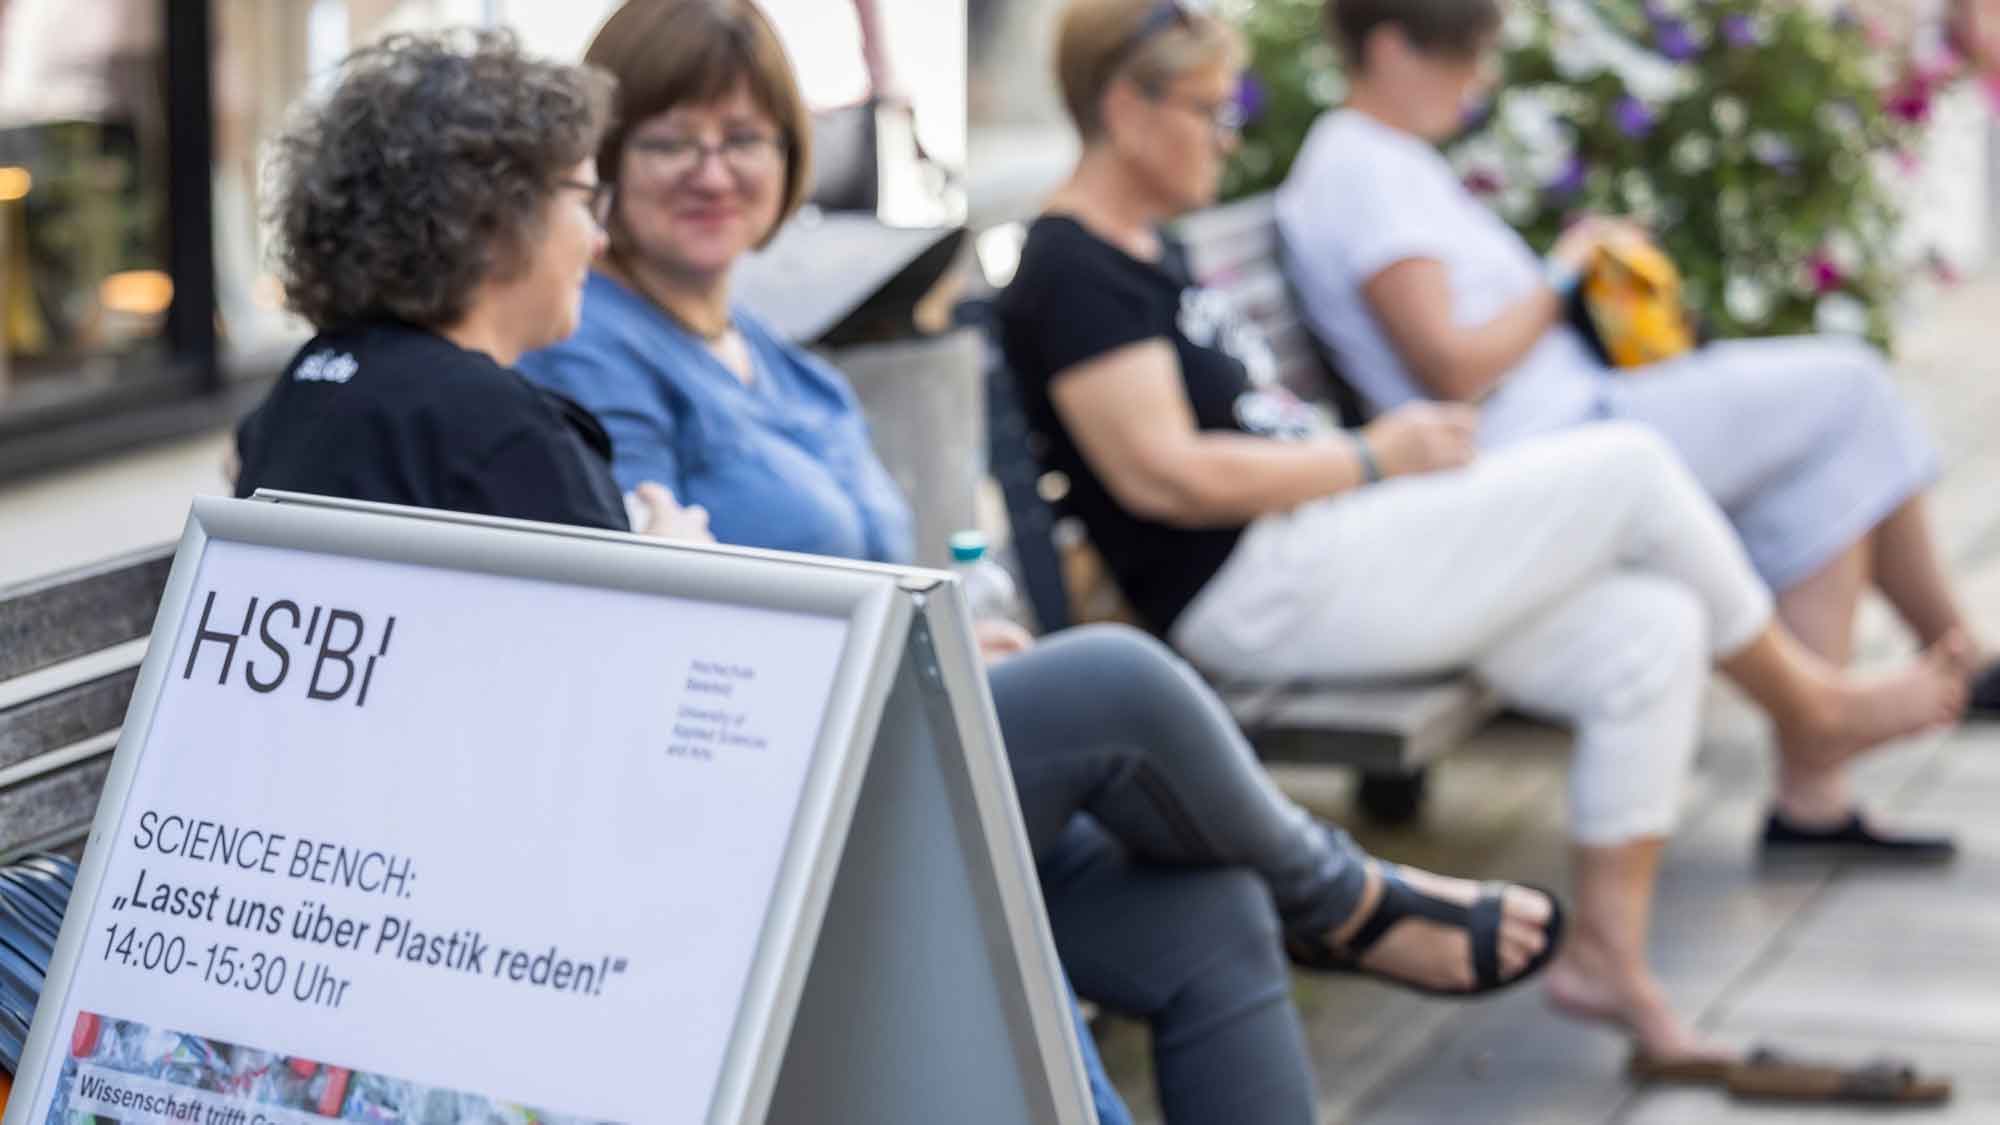 Wissenschaft trifft Gesellschaft in der Fußgängerzone: HSBI Projekt InCamS@BI veranstaltet erste Science Bench in der Bielefelder Altstadt